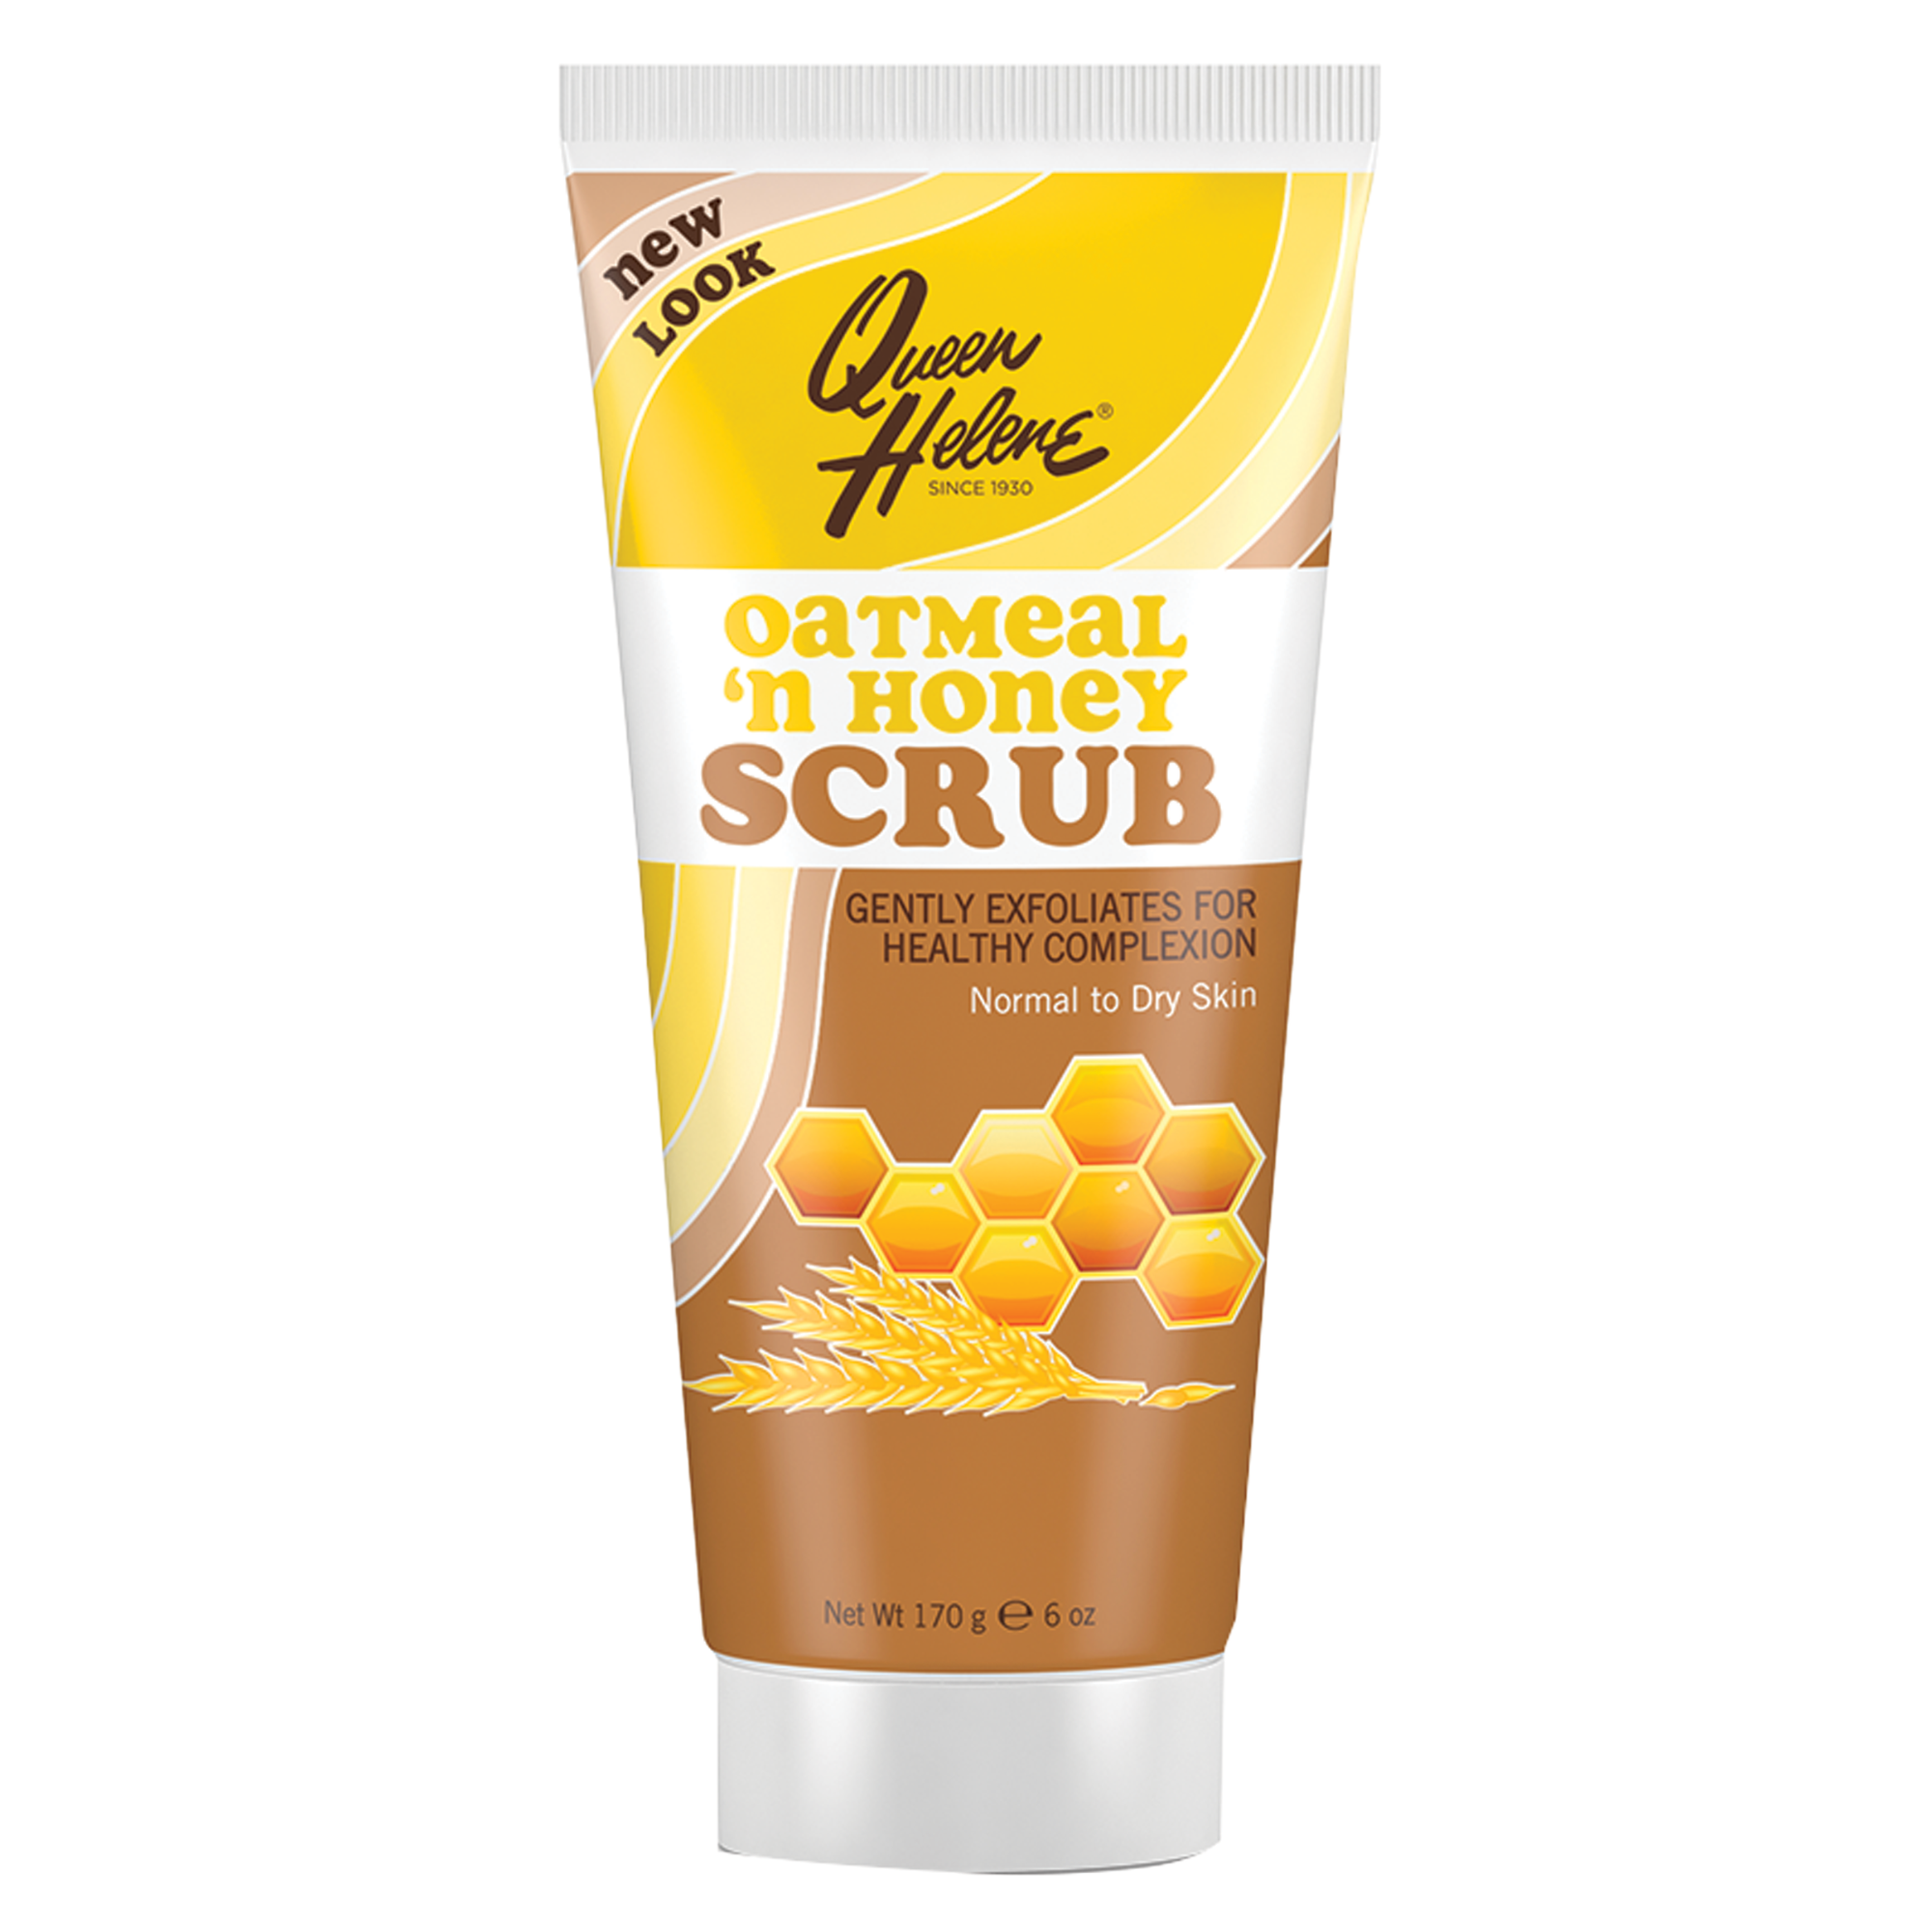 Oatmeal ‘n Honey Scrub for Normal to Dry Skin